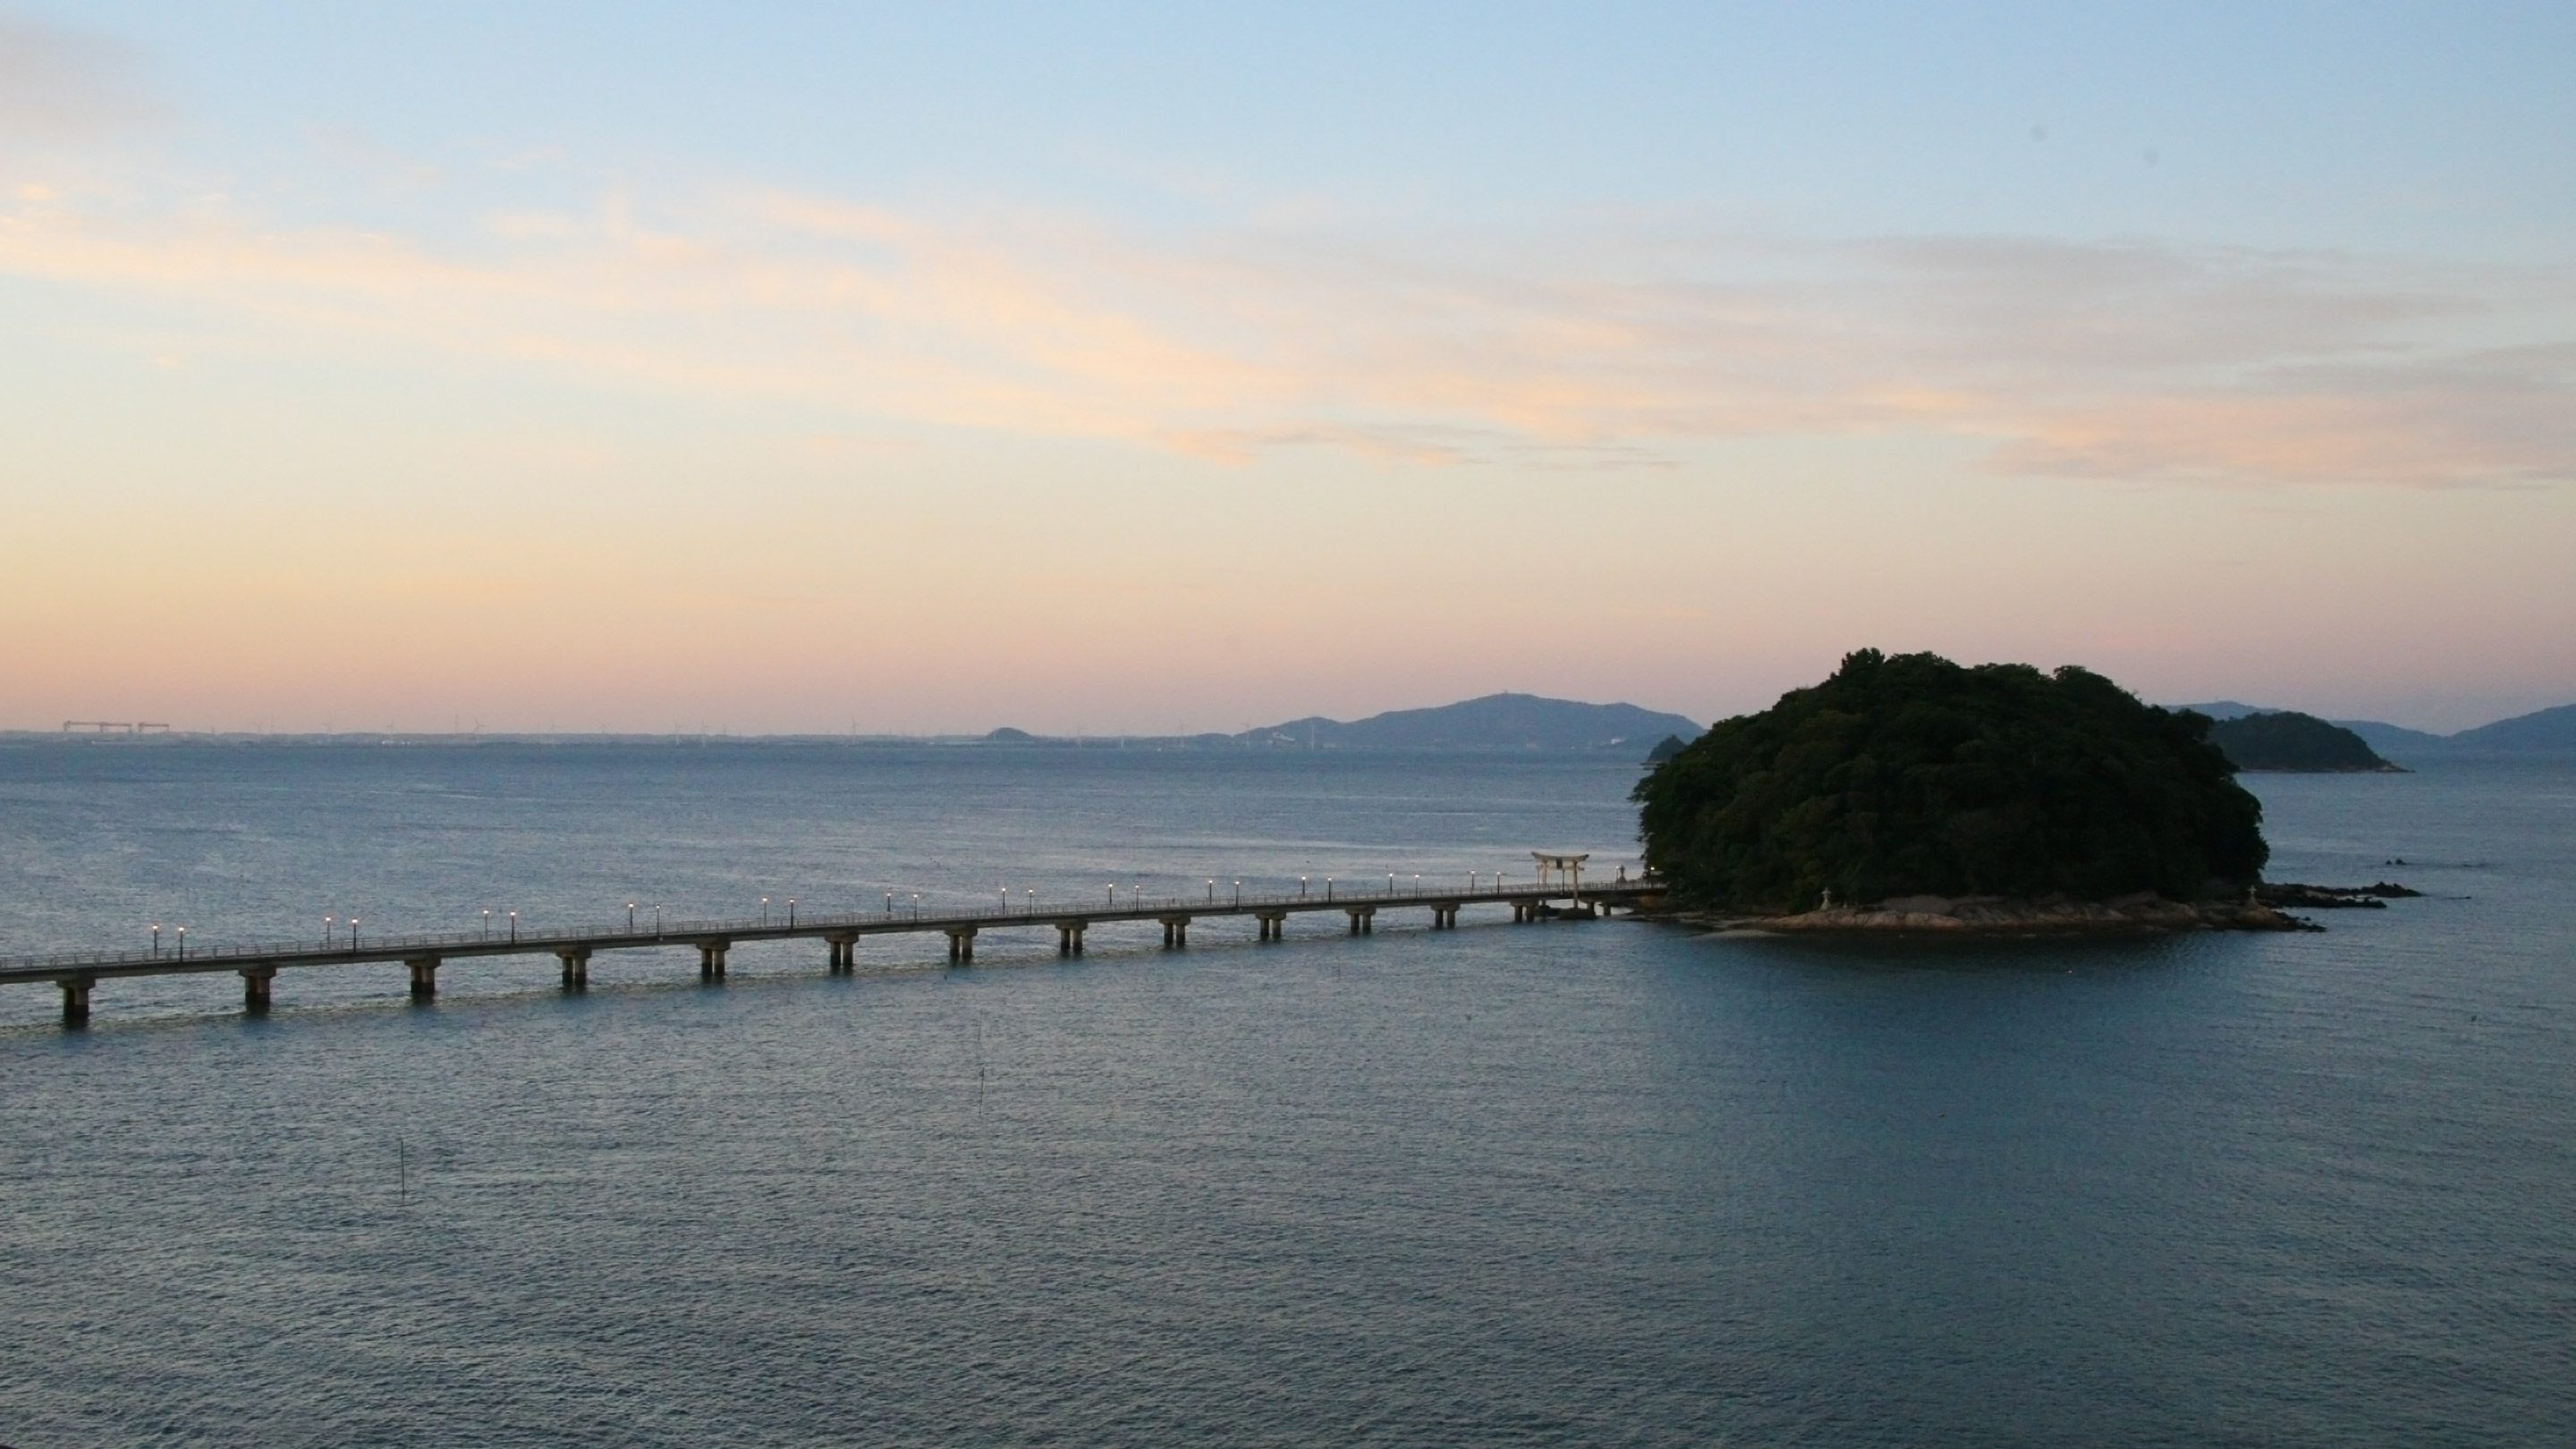 竹島は国指定の天然記念物。島内に5つの神社があり、まさにパワースポット。